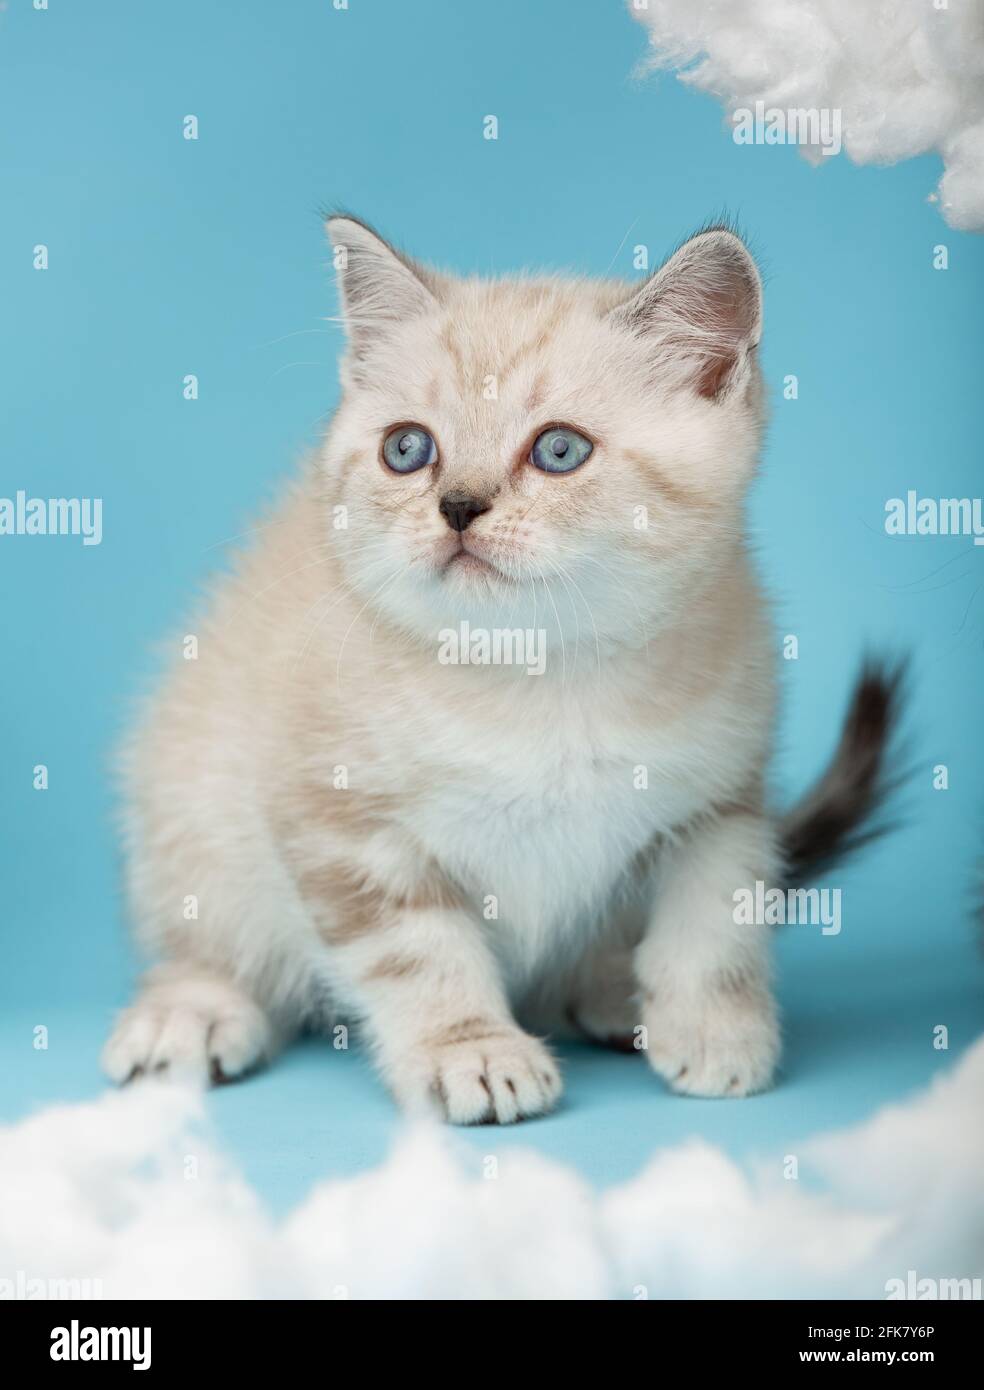 Das verspielte, cremefarbene schottische Kätzchen mit blauen Augen sitzt auf einem blauen Hintergrund und ist dabei anzugreifen. Haustiere, Tiere und Katzen Konzept. Stockfoto